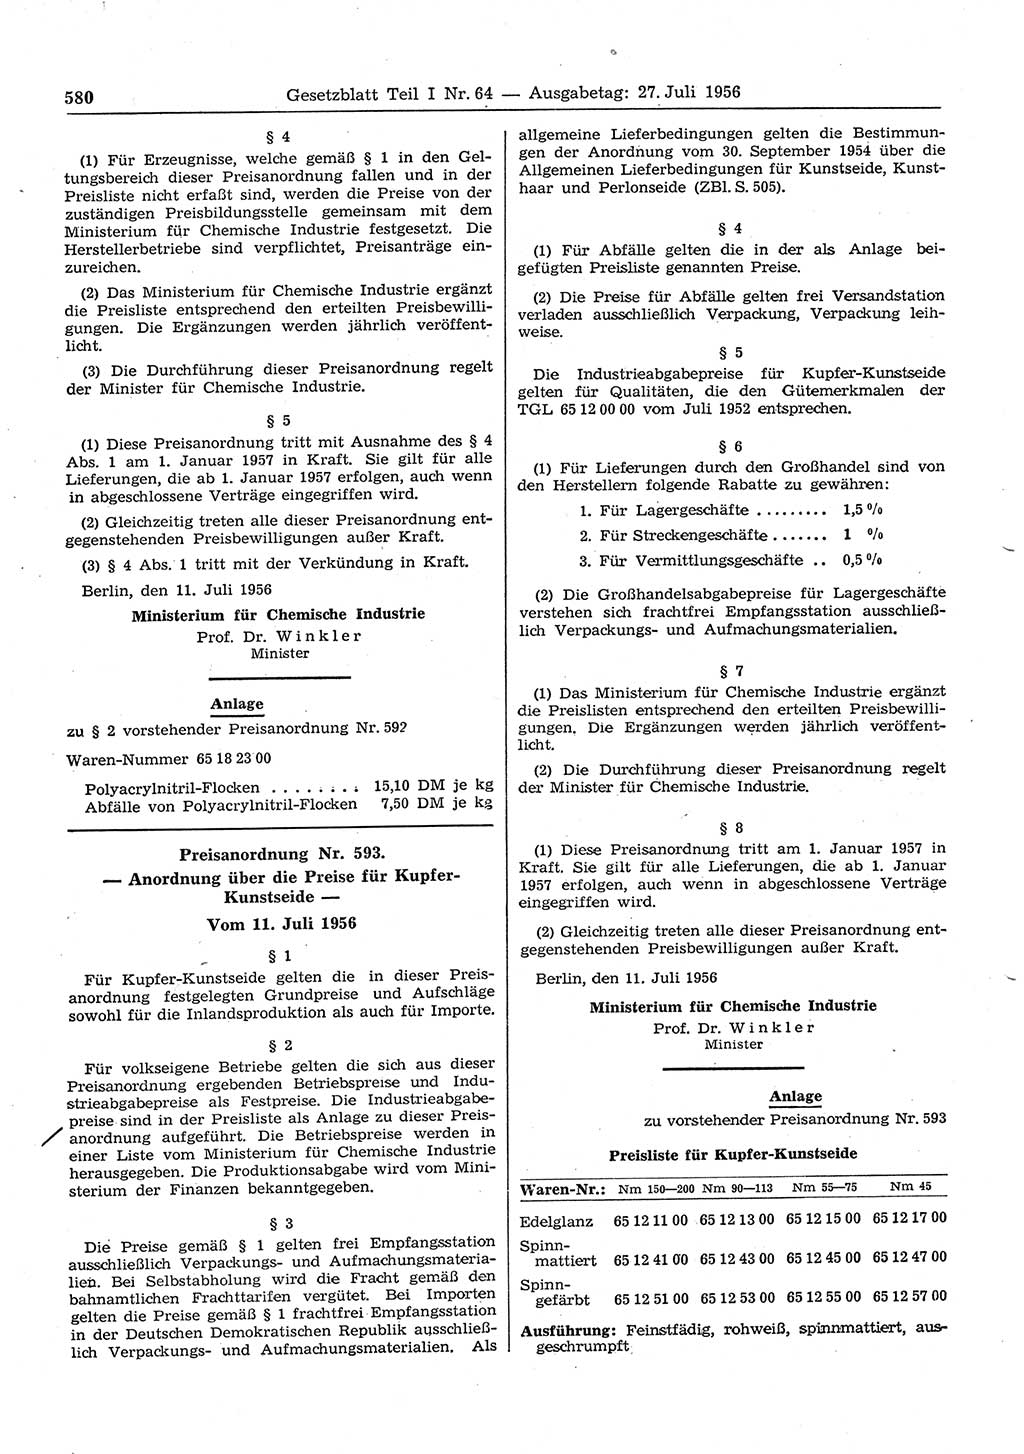 Gesetzblatt (GBl.) der Deutschen Demokratischen Republik (DDR) Teil Ⅰ 1956, Seite 580 (GBl. DDR Ⅰ 1956, S. 580)